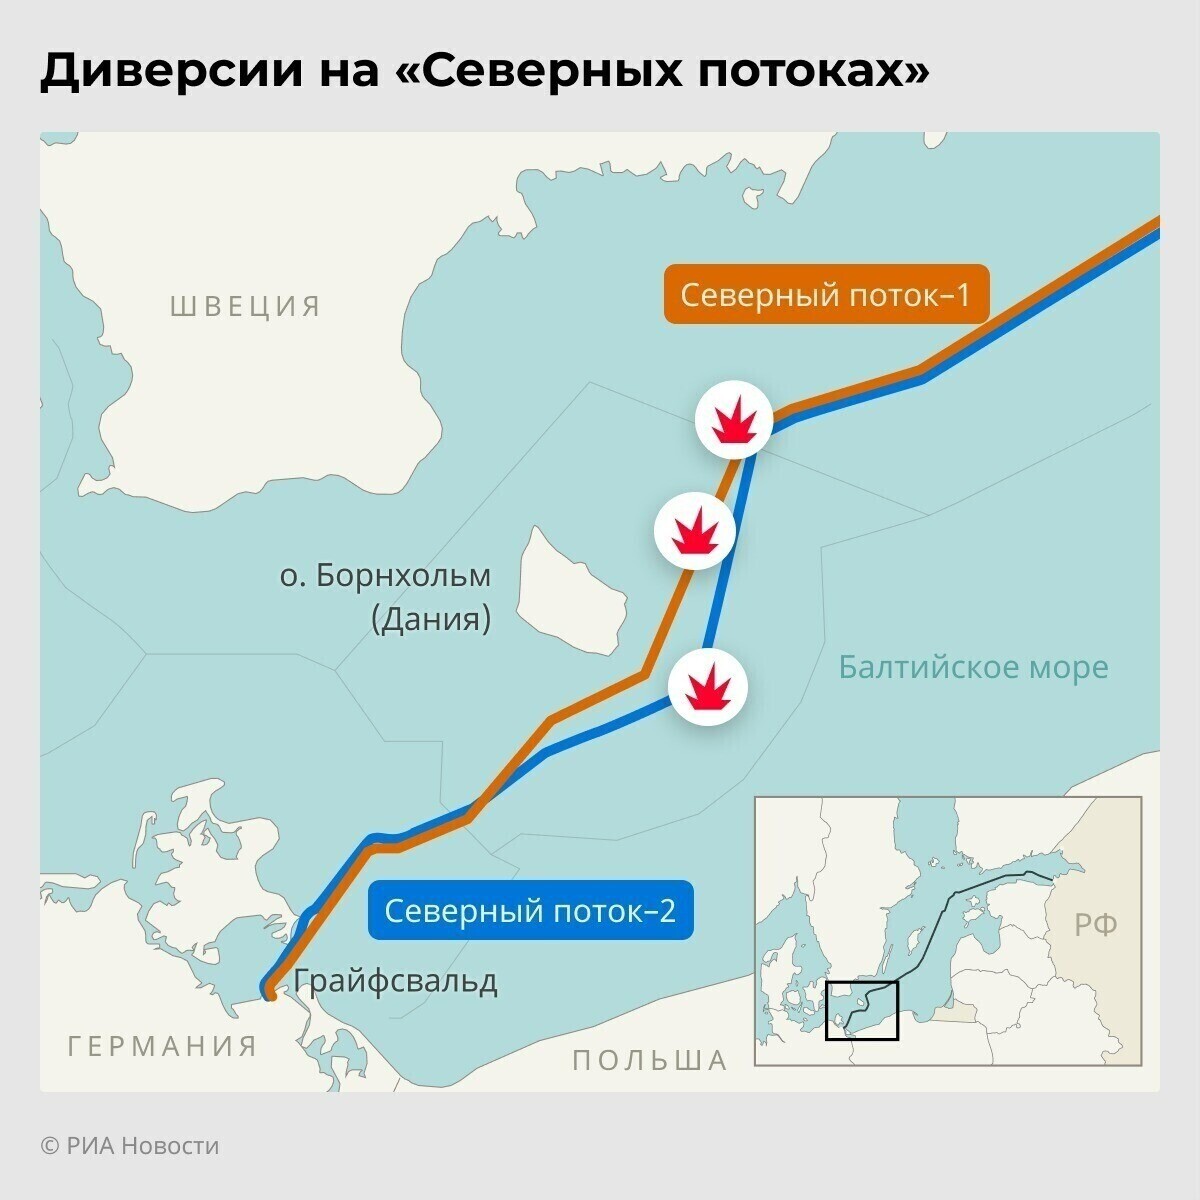 Песков: расследование на "Северном потоке" завершено несмотря на признание диверсии